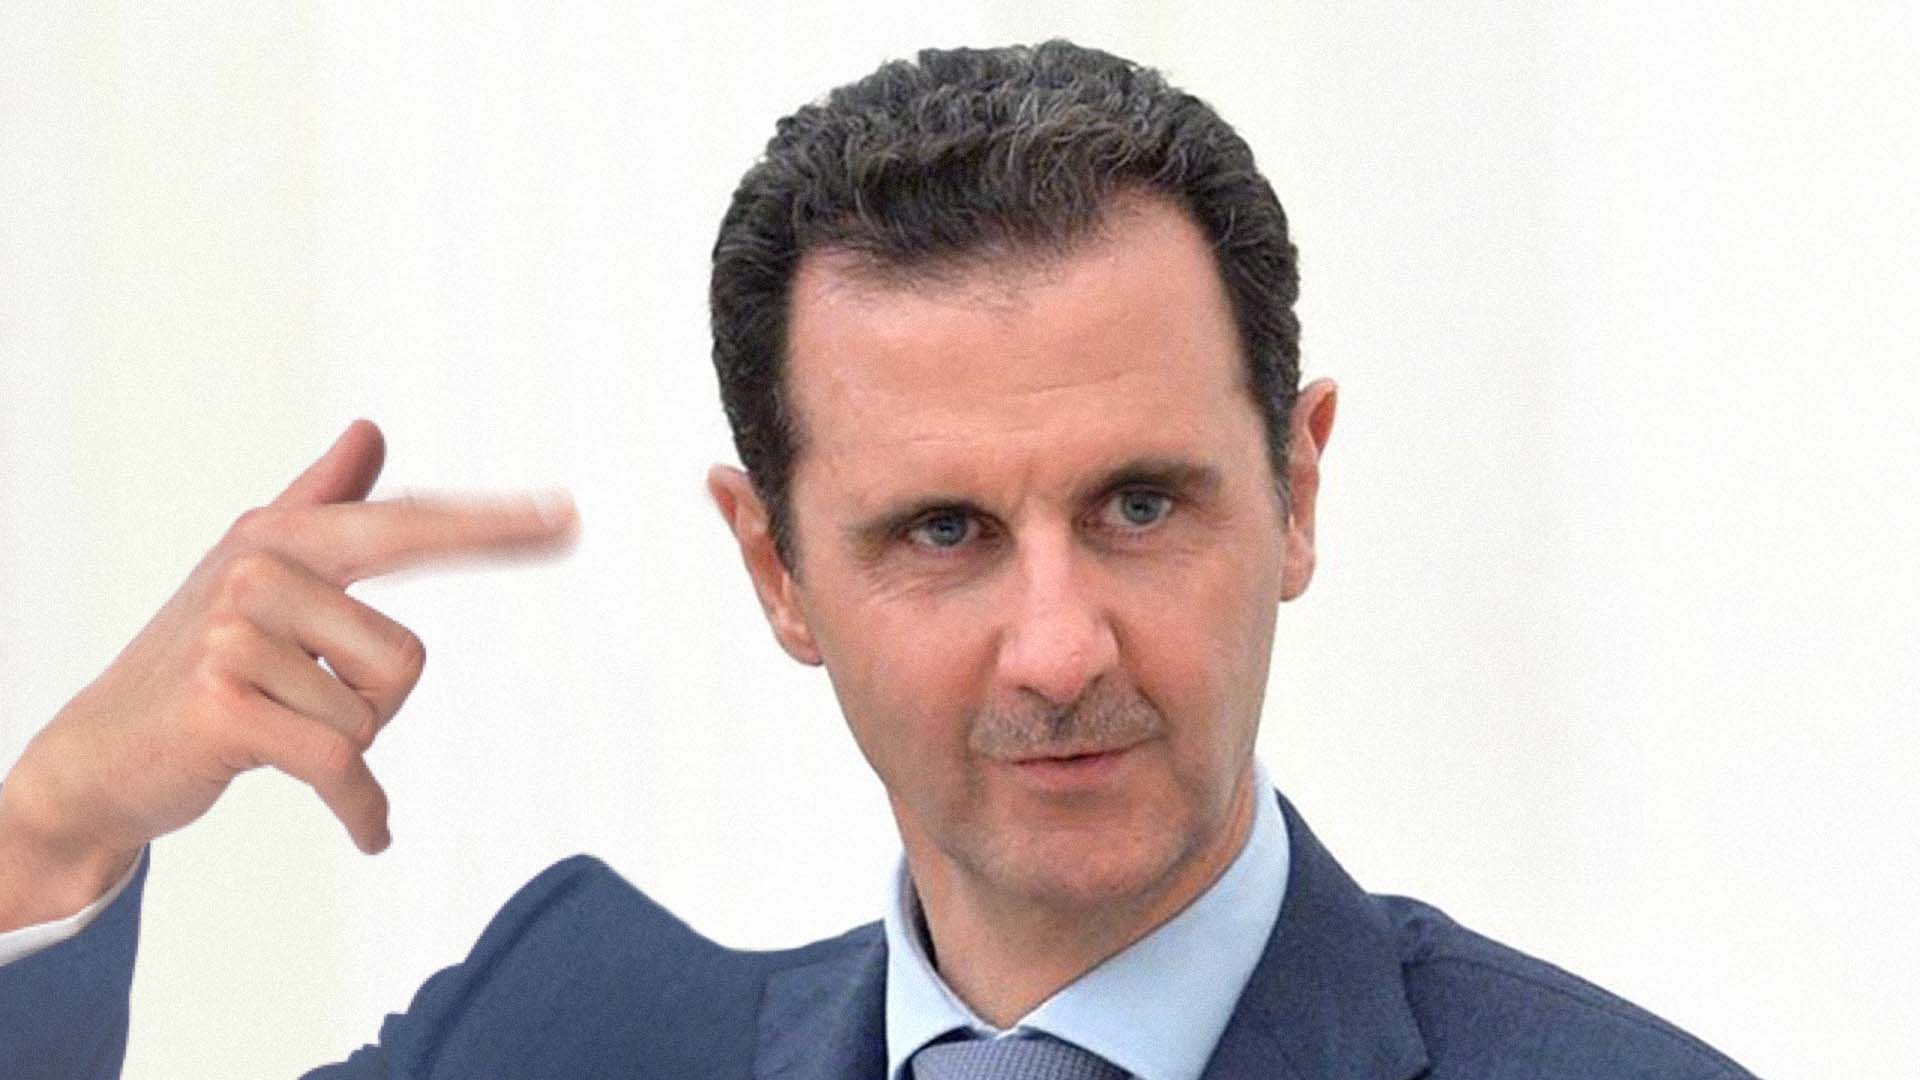 صورة الأسد يؤكد أن غُرف الملح ليست إلا هلوسات اخترعها المعتقلون من شدة التعذيب